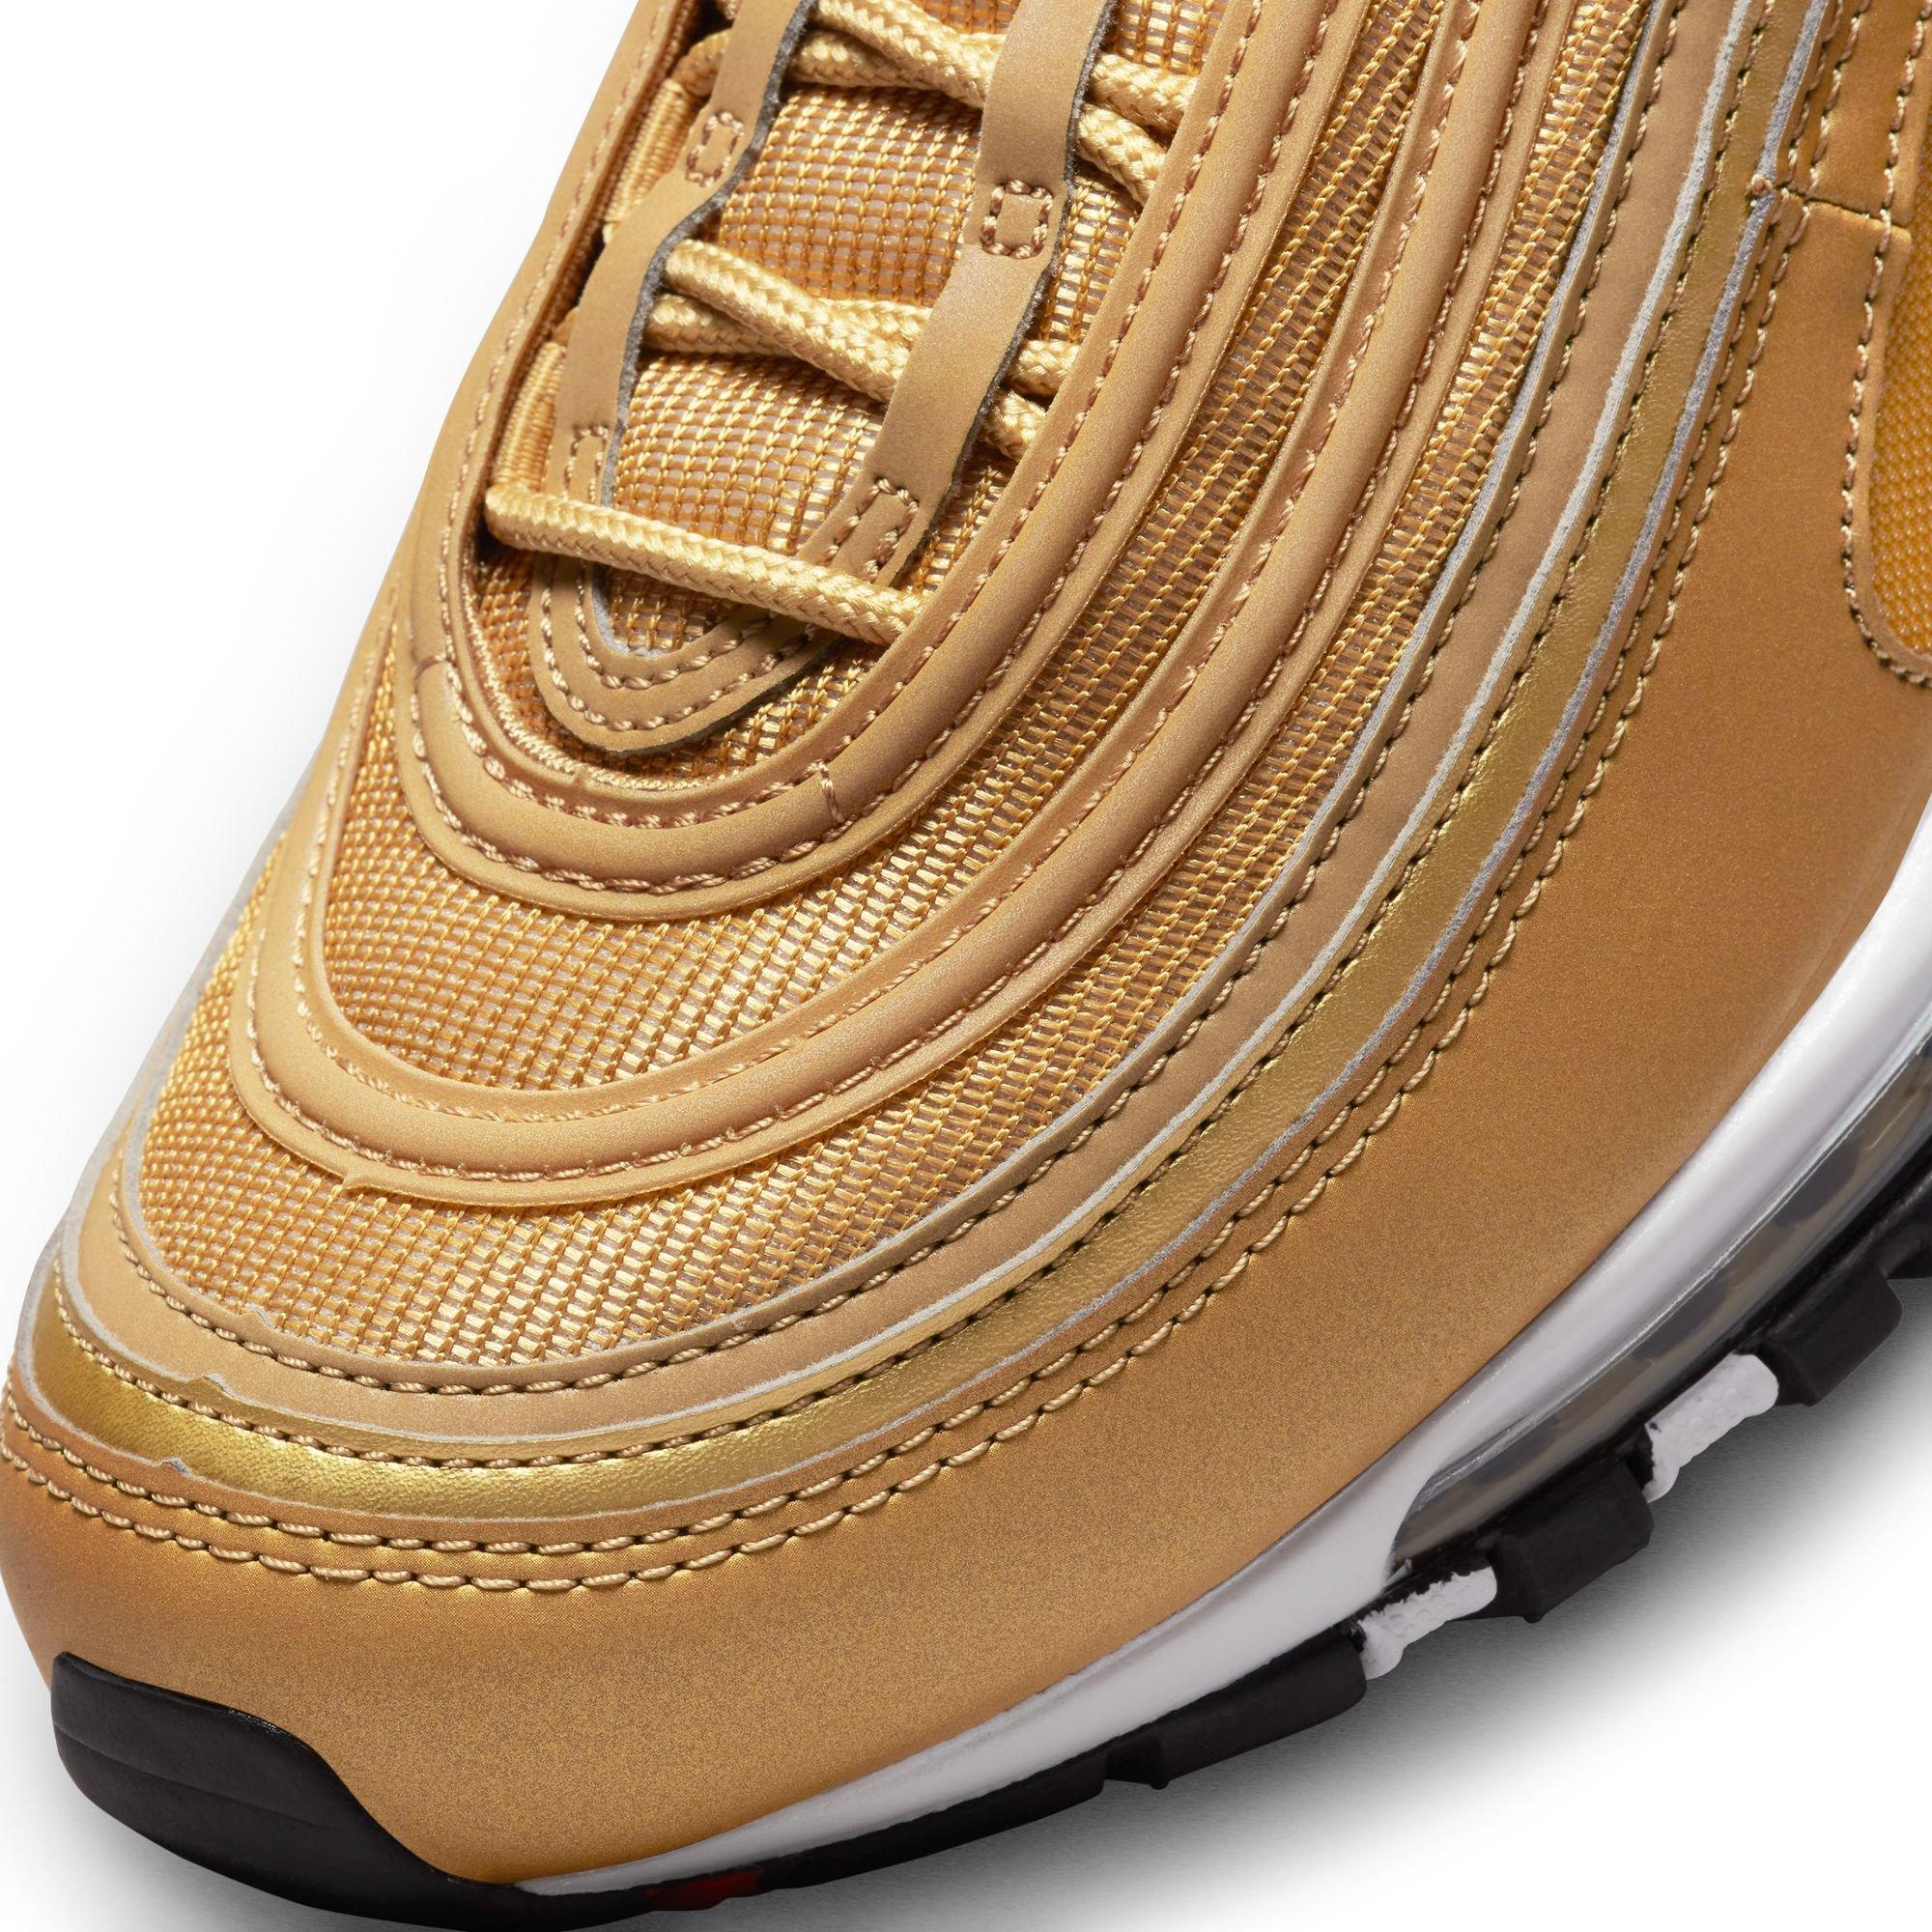 Oeps verdund vochtigheid Nike Air Max 97 OG "Gold Bullet" Men's Shoe